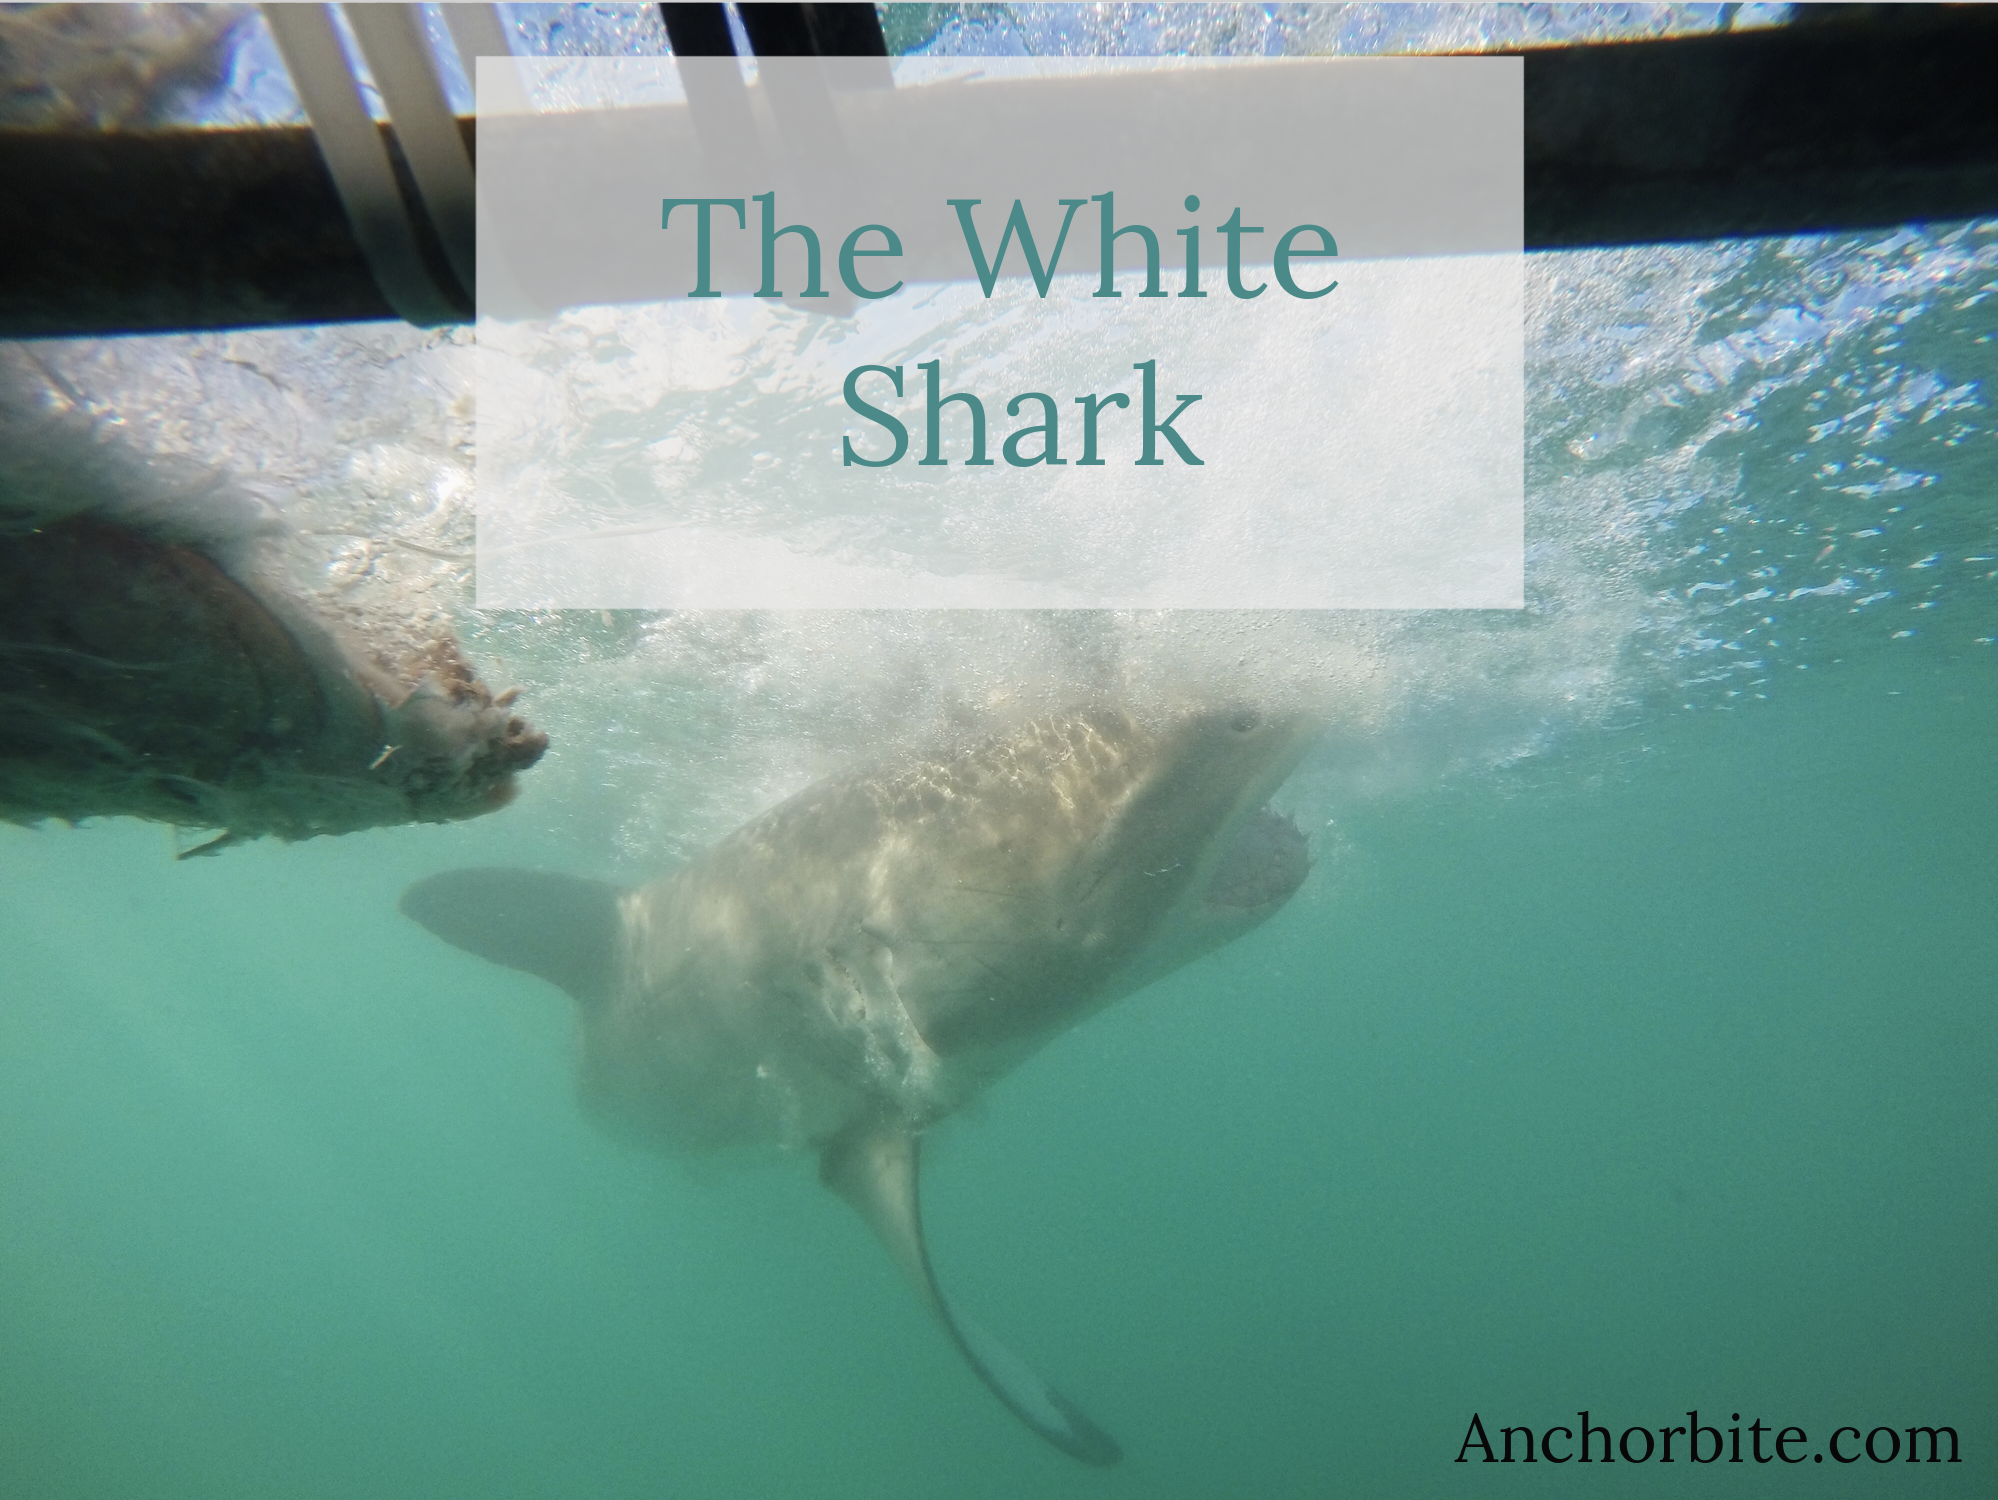 The White Shark